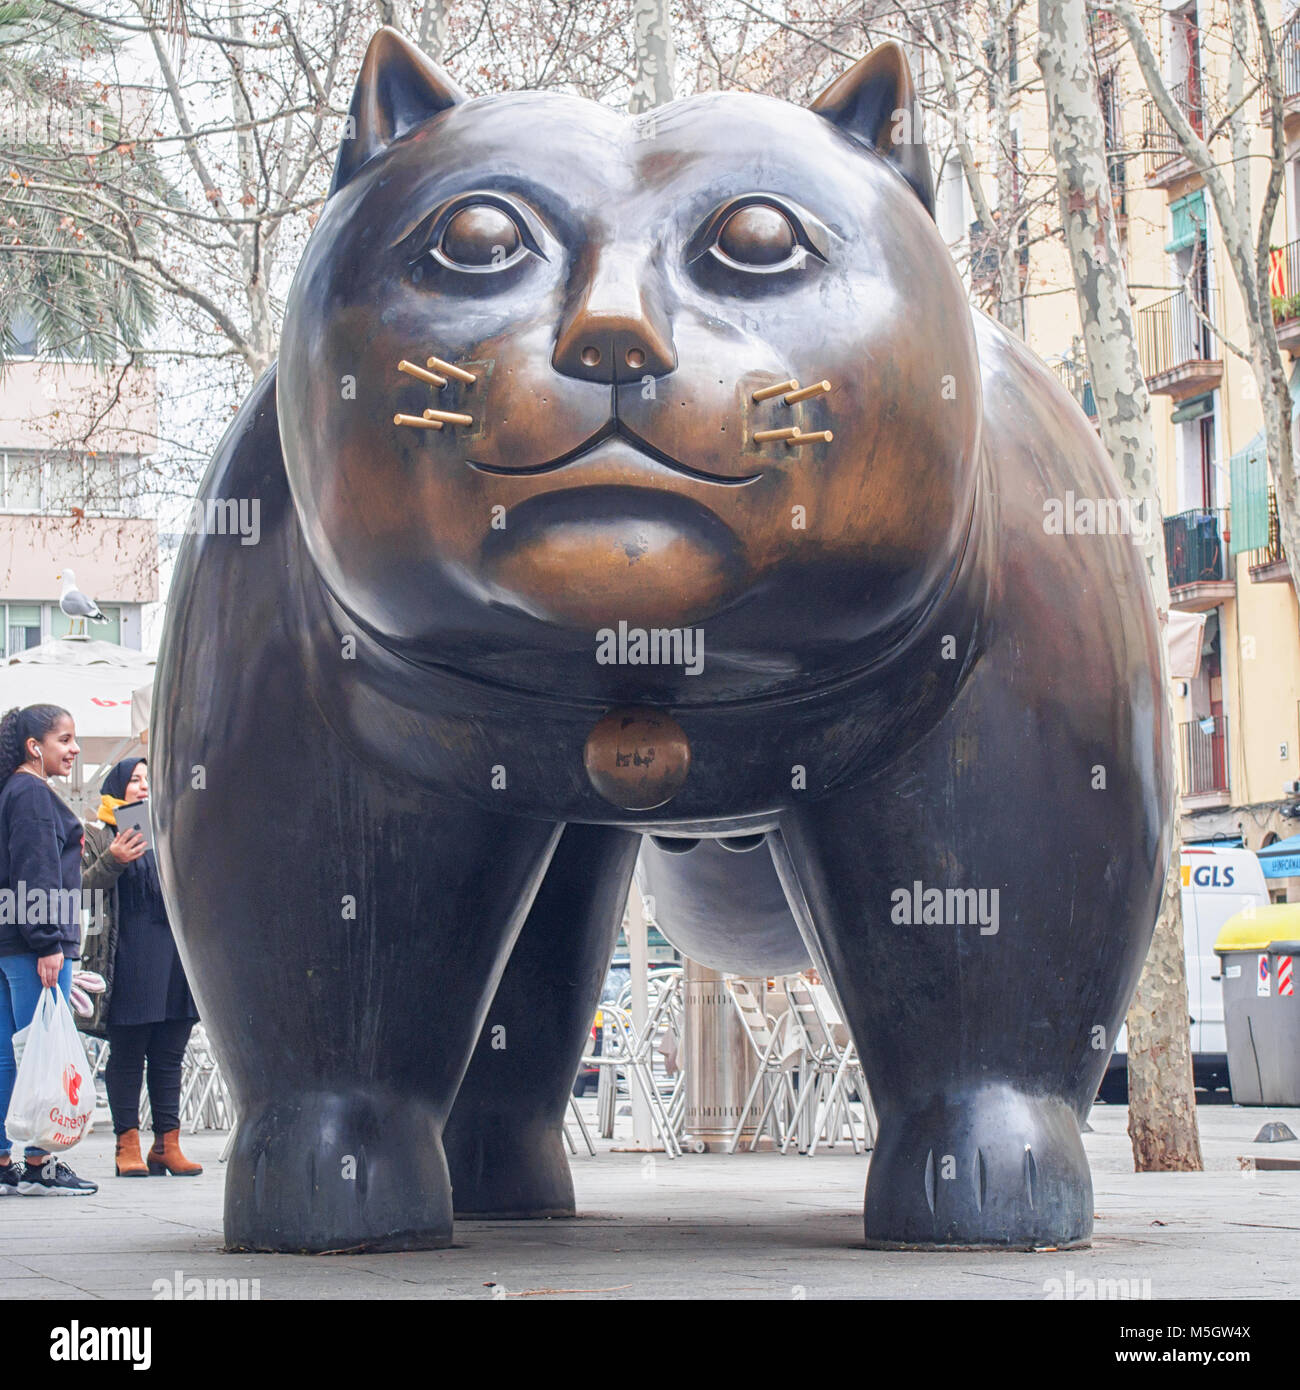 BARCELONA, España-Febrero 17, 2018: la escultura de Fernando Botero "El Gato" ("Cat") en el barrio del Raval Foto de stock